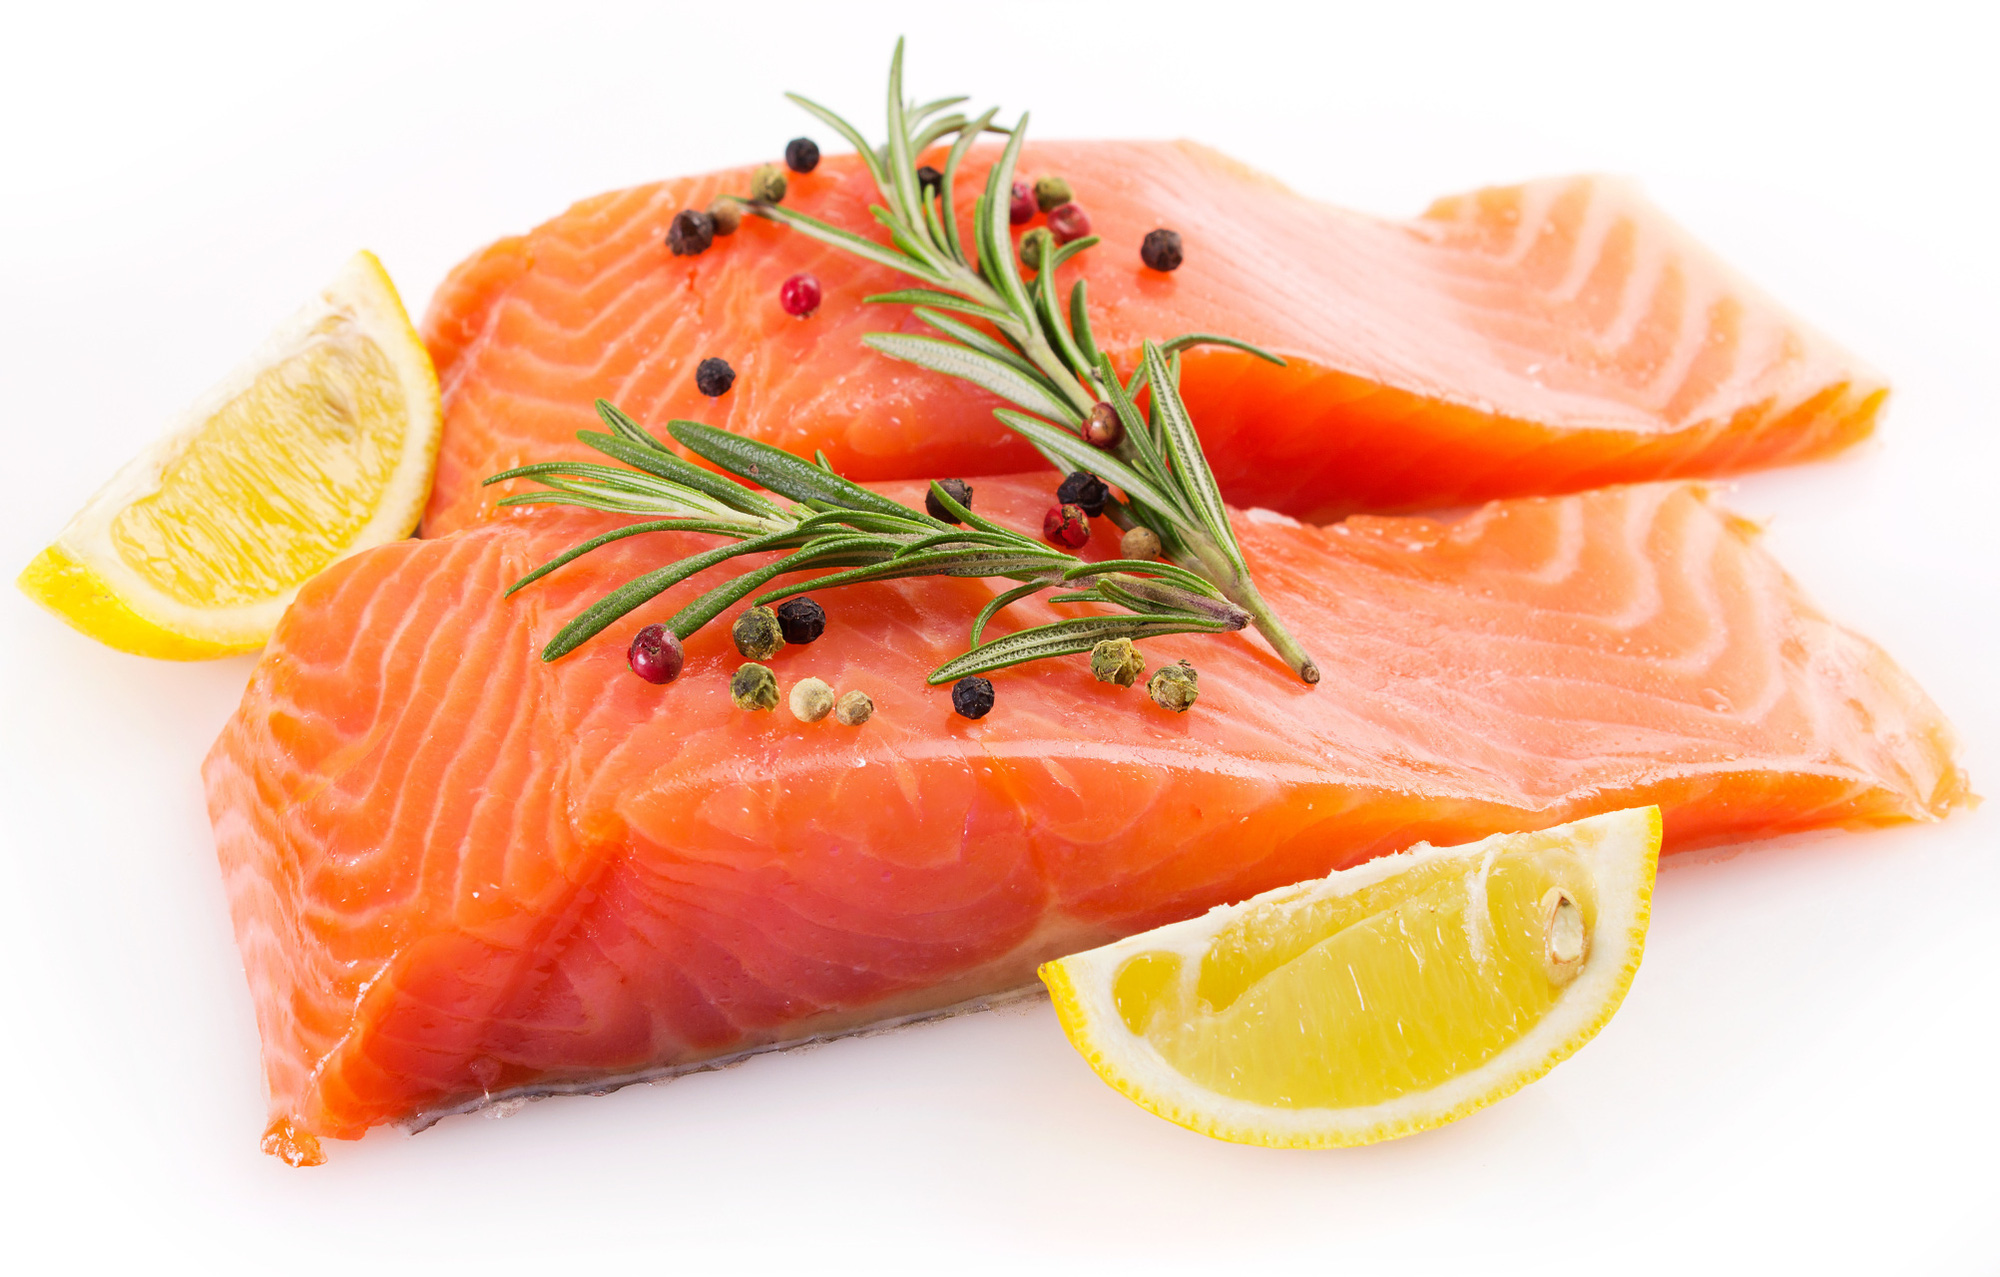  Cá là một trong những loại thực phẩm đem lại nhiều lợi ích nhất cho cơ thể, từ giảm nguy cơ mắc bệnh tim, cải thiện tâm trạng đến tránh ung thư, chứng mất trí và viêm khớp dạng thấp.